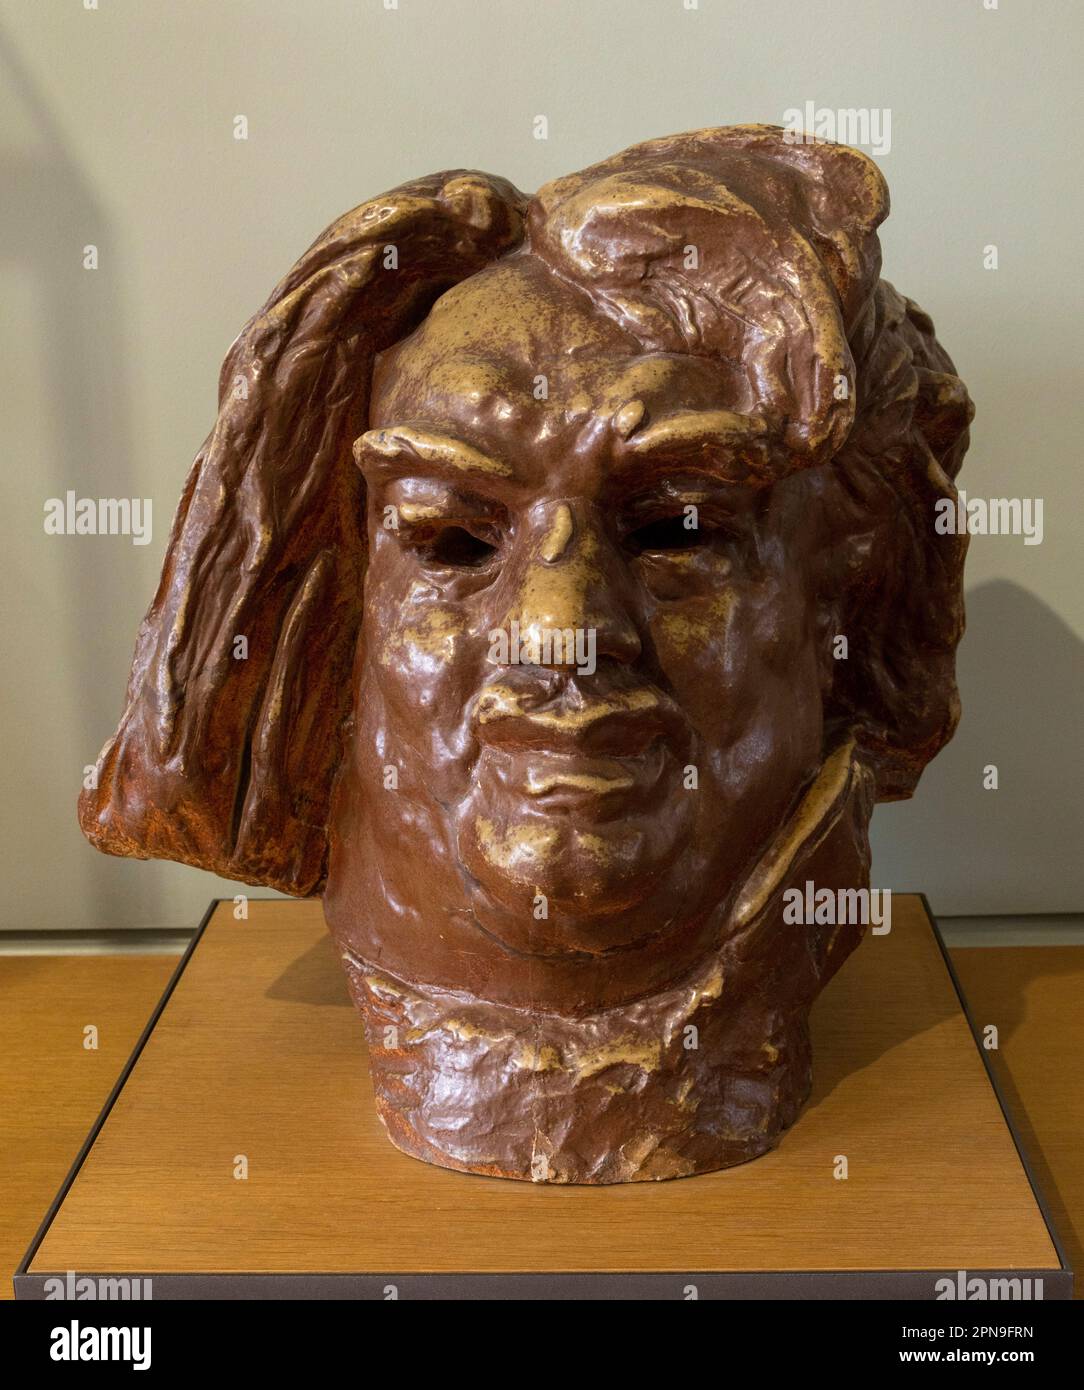 bust of Honoré de Balzac, sculpture by Rodin, Rodin Museum, Paris, France Stock Photo